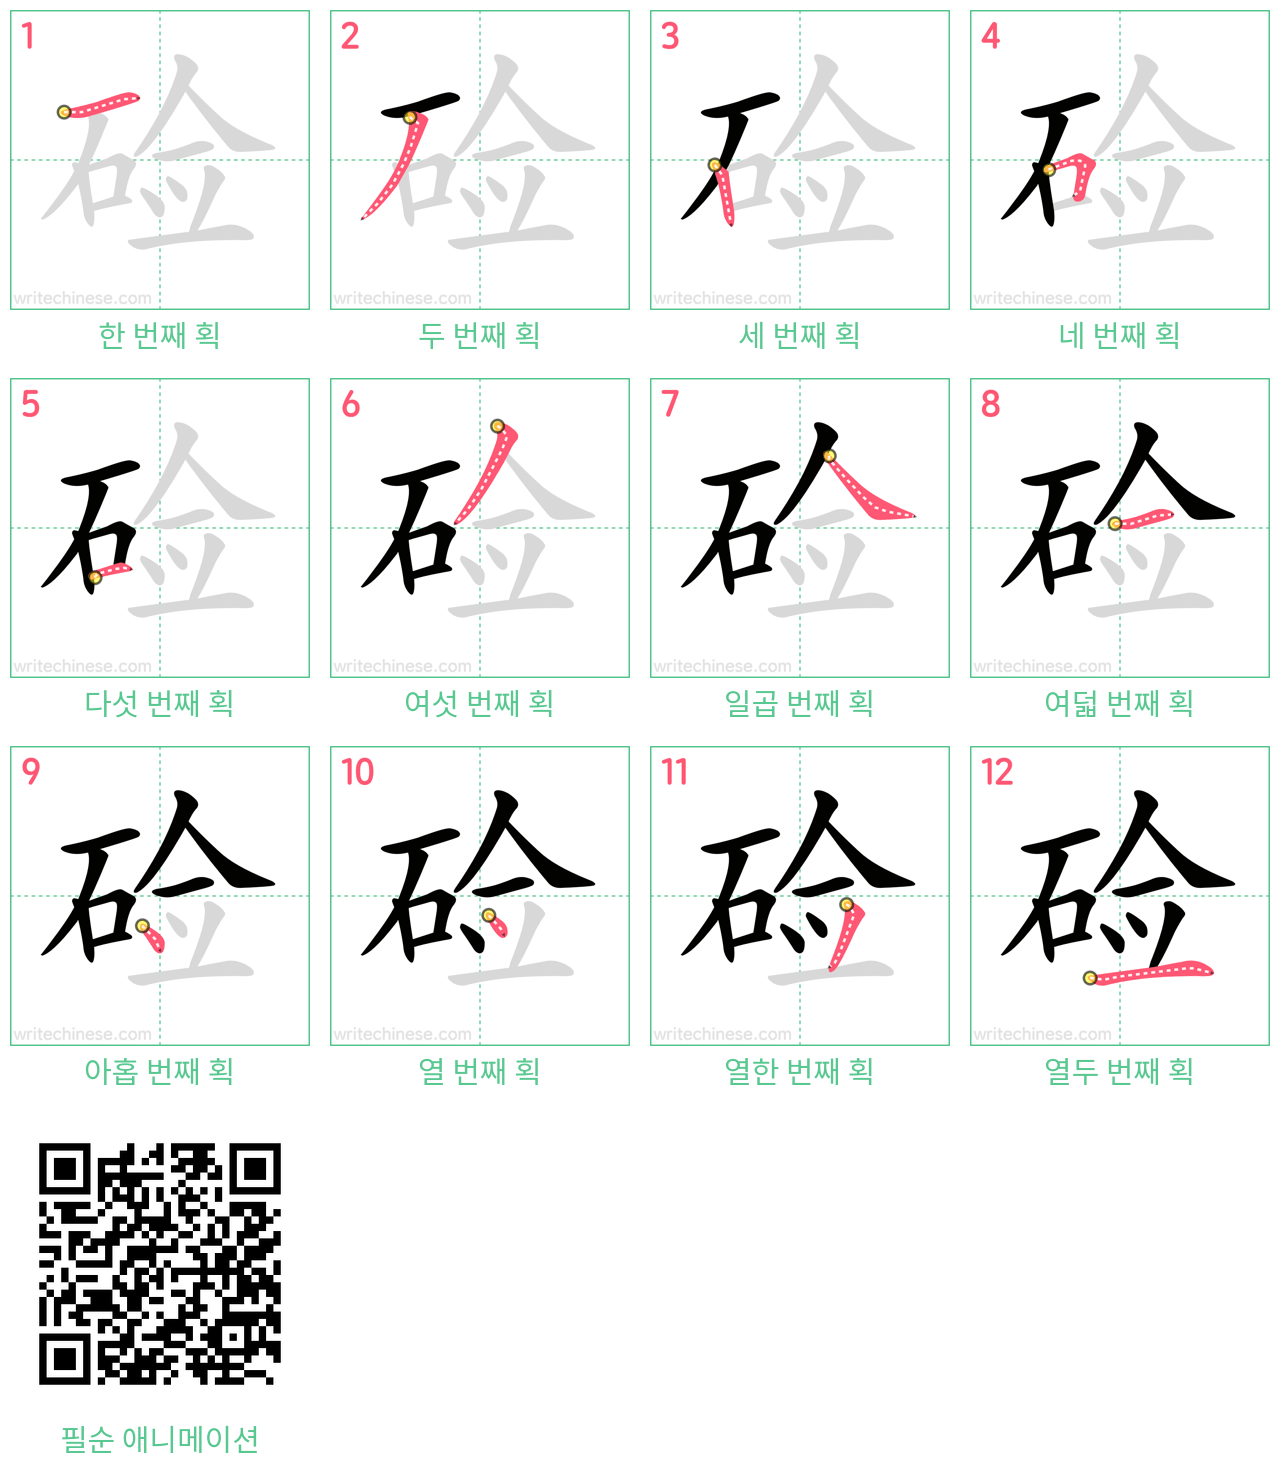 硷 step-by-step stroke order diagrams